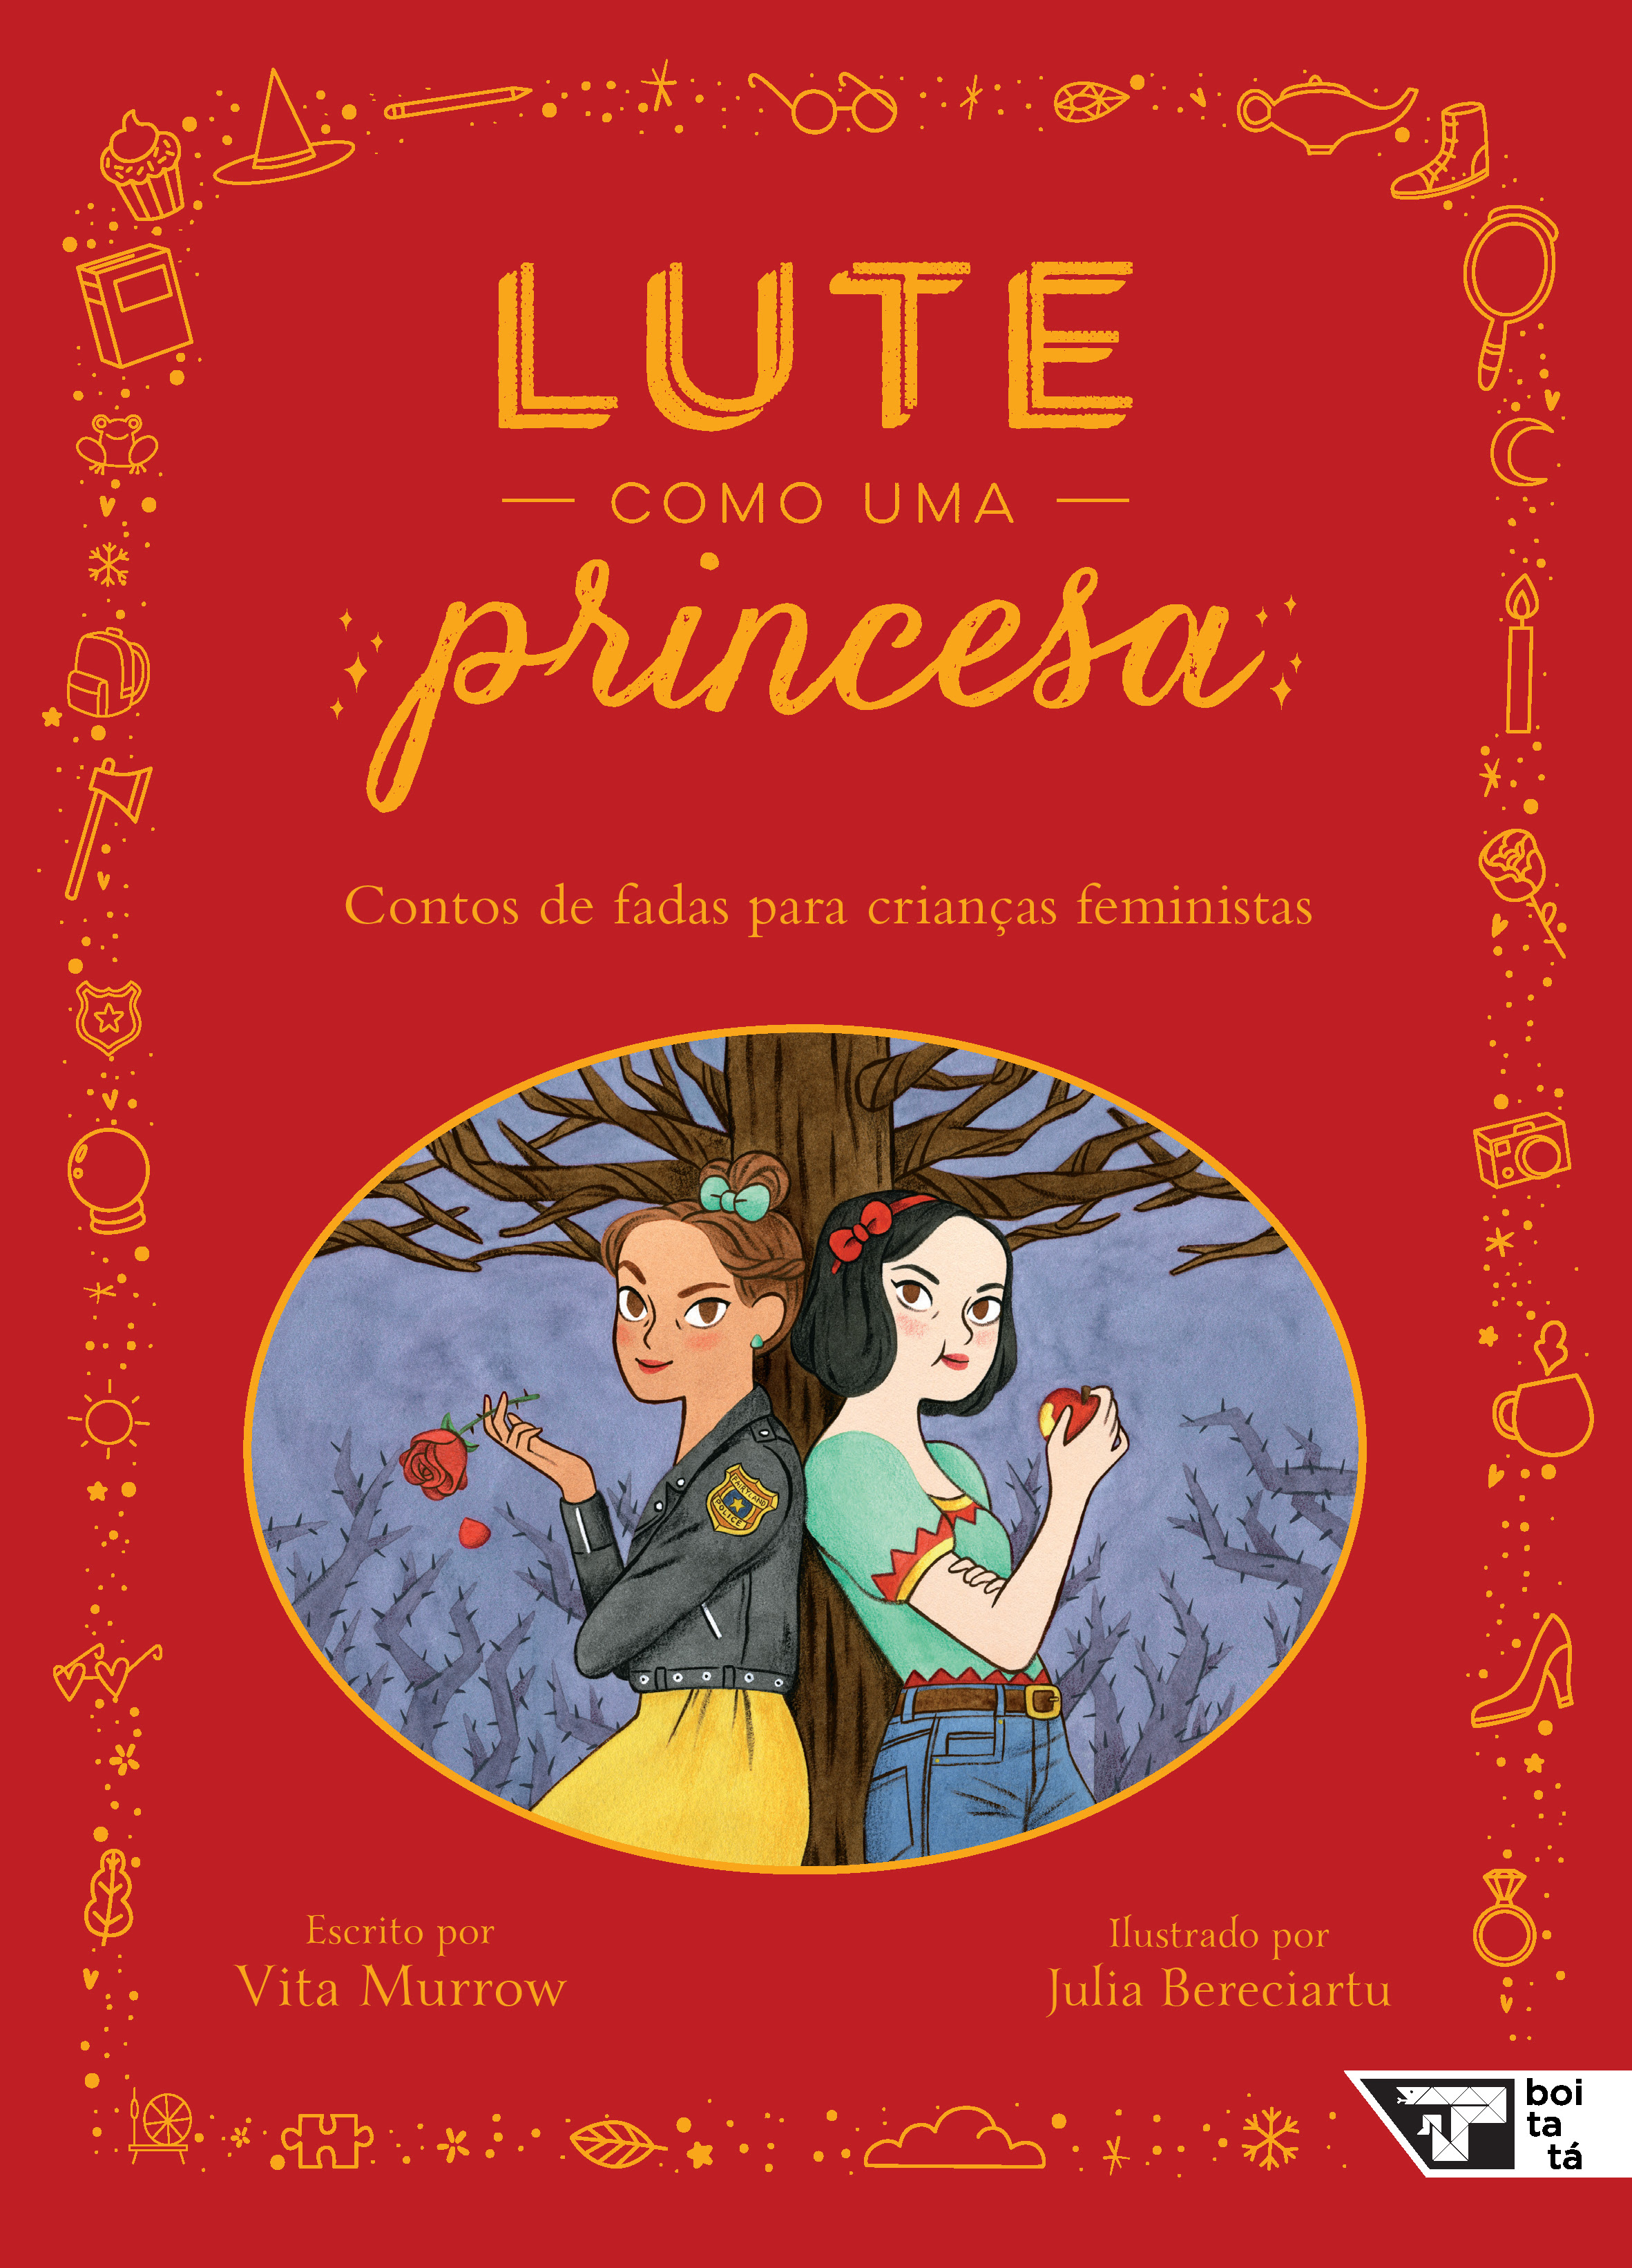 Foto da Capa do livro ”Lute como uma princesa” escrito por Vita Murrow